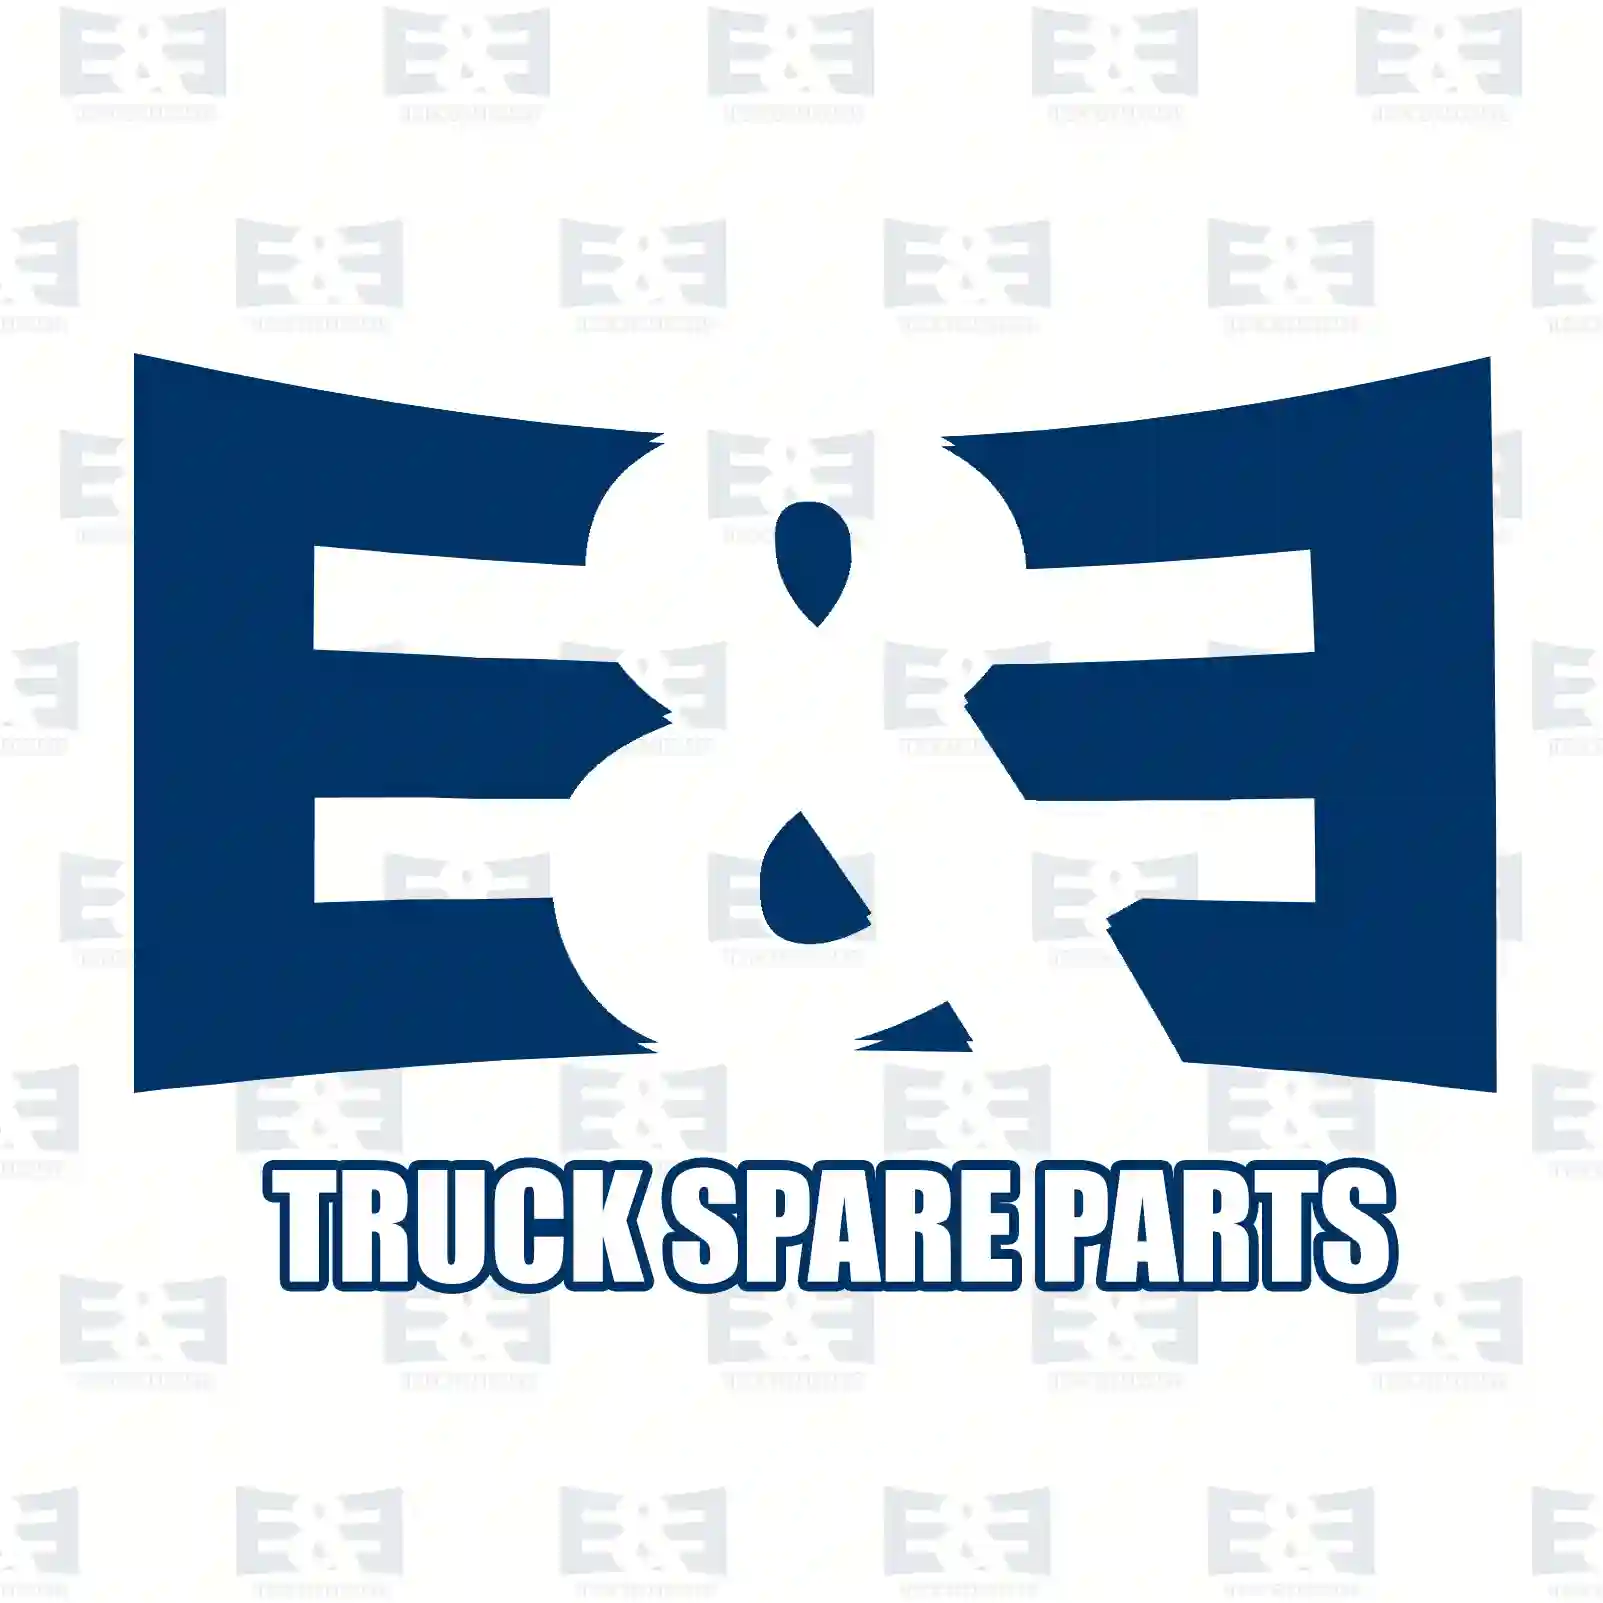 Radiator hose, 2E2203663, 21461826, 22214731, ZG00586-0008 ||  2E2203663 E&E Truck Spare Parts | Truck Spare Parts, Auotomotive Spare Parts Radiator hose, 2E2203663, 21461826, 22214731, ZG00586-0008 ||  2E2203663 E&E Truck Spare Parts | Truck Spare Parts, Auotomotive Spare Parts